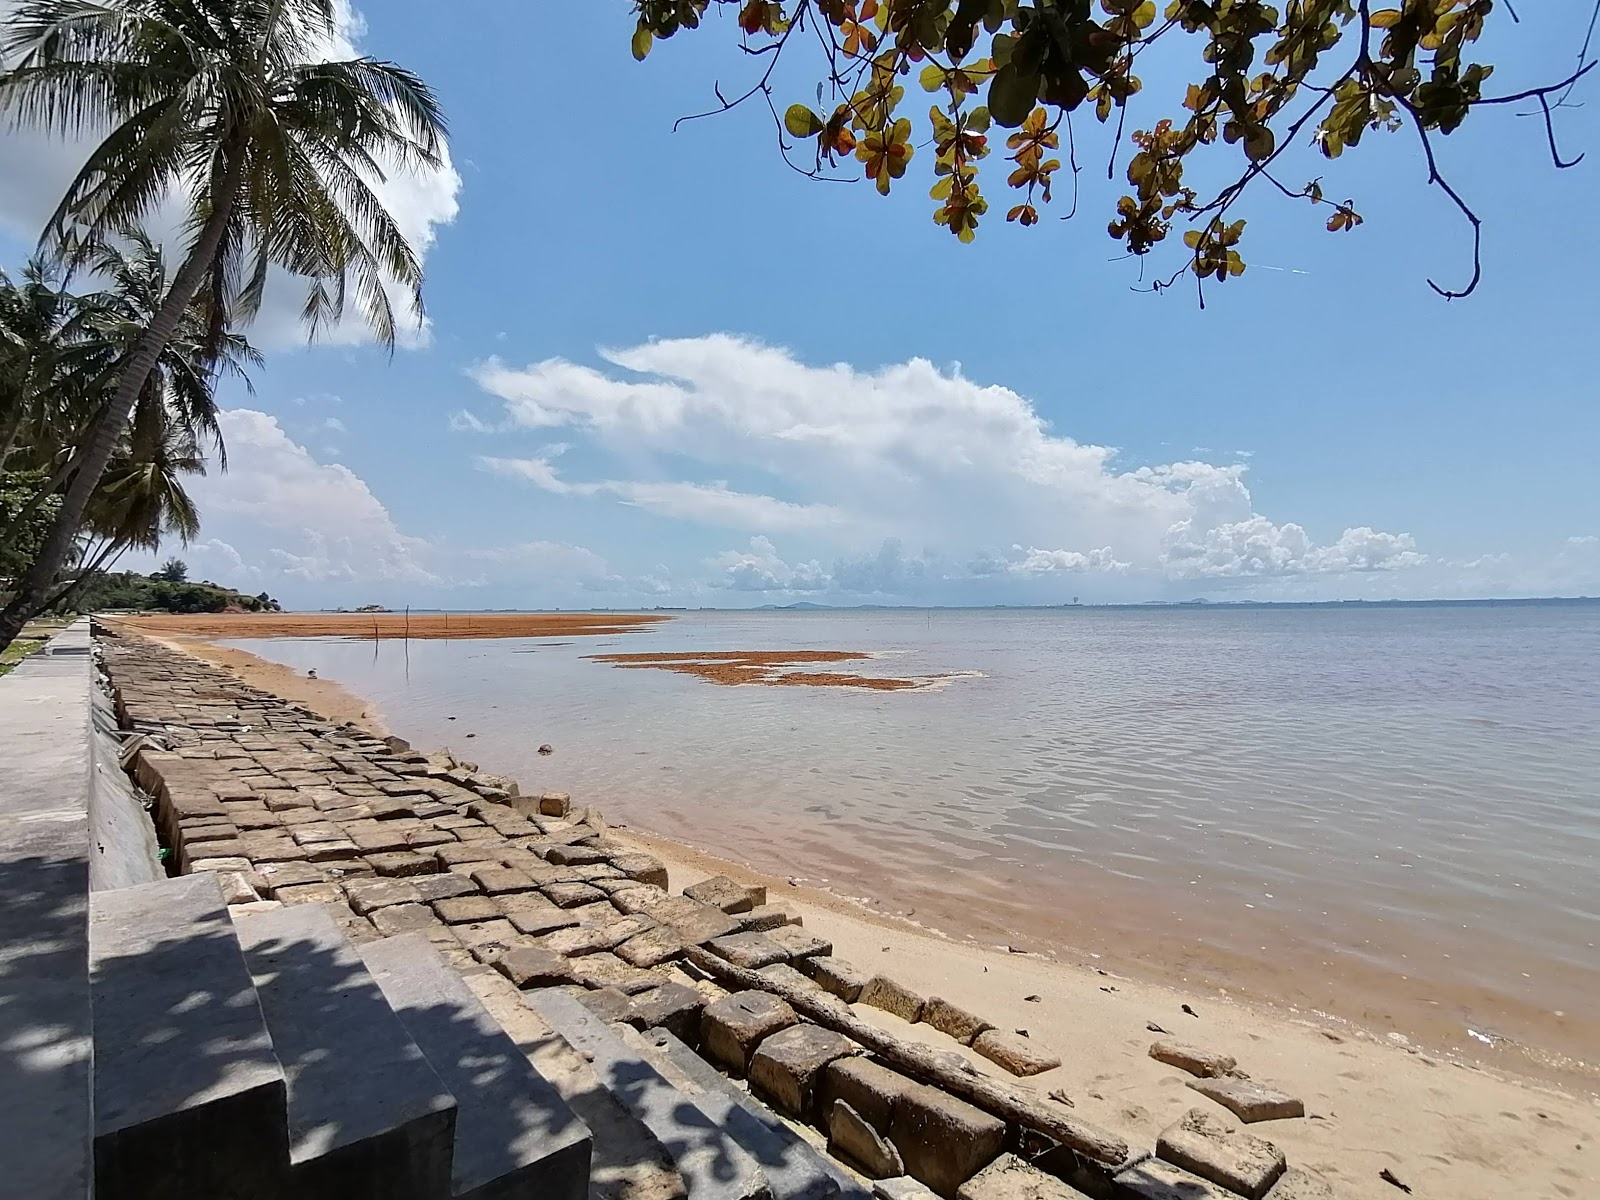 Zdjęcie Pantai Tj. Bemban z powierzchnią różowy piasek